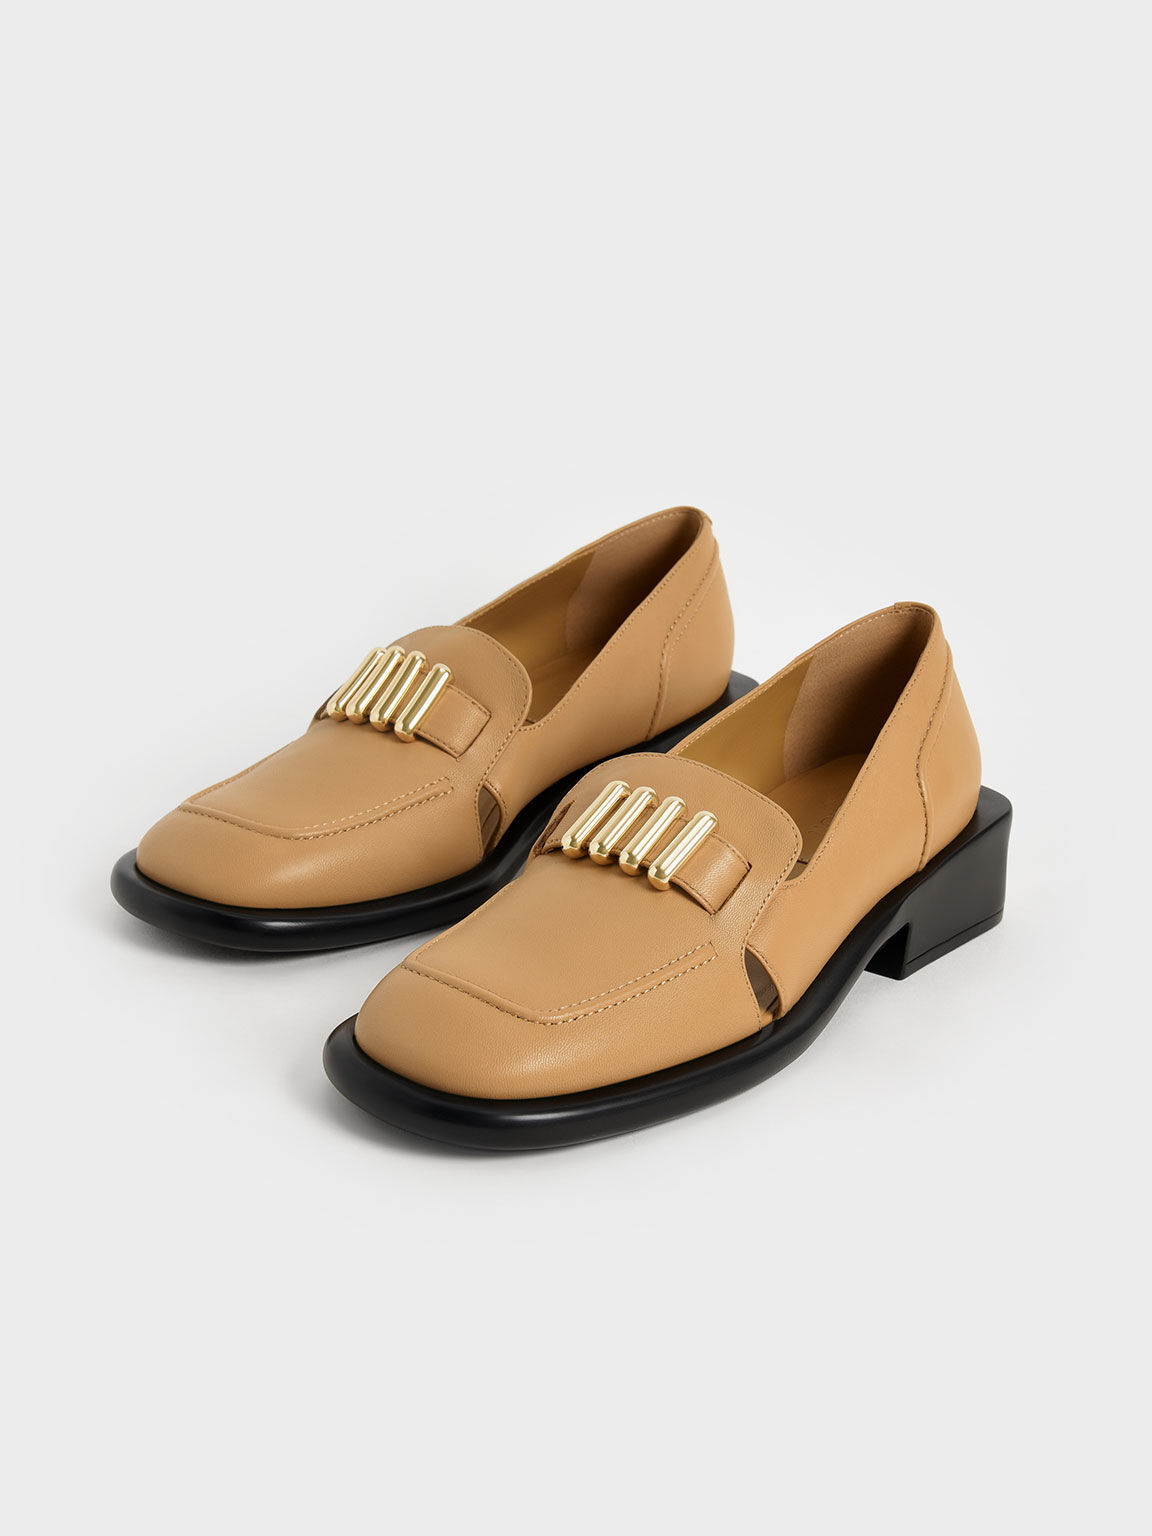 真皮金釦粗跟樂福鞋, 黃褐色, hi-res